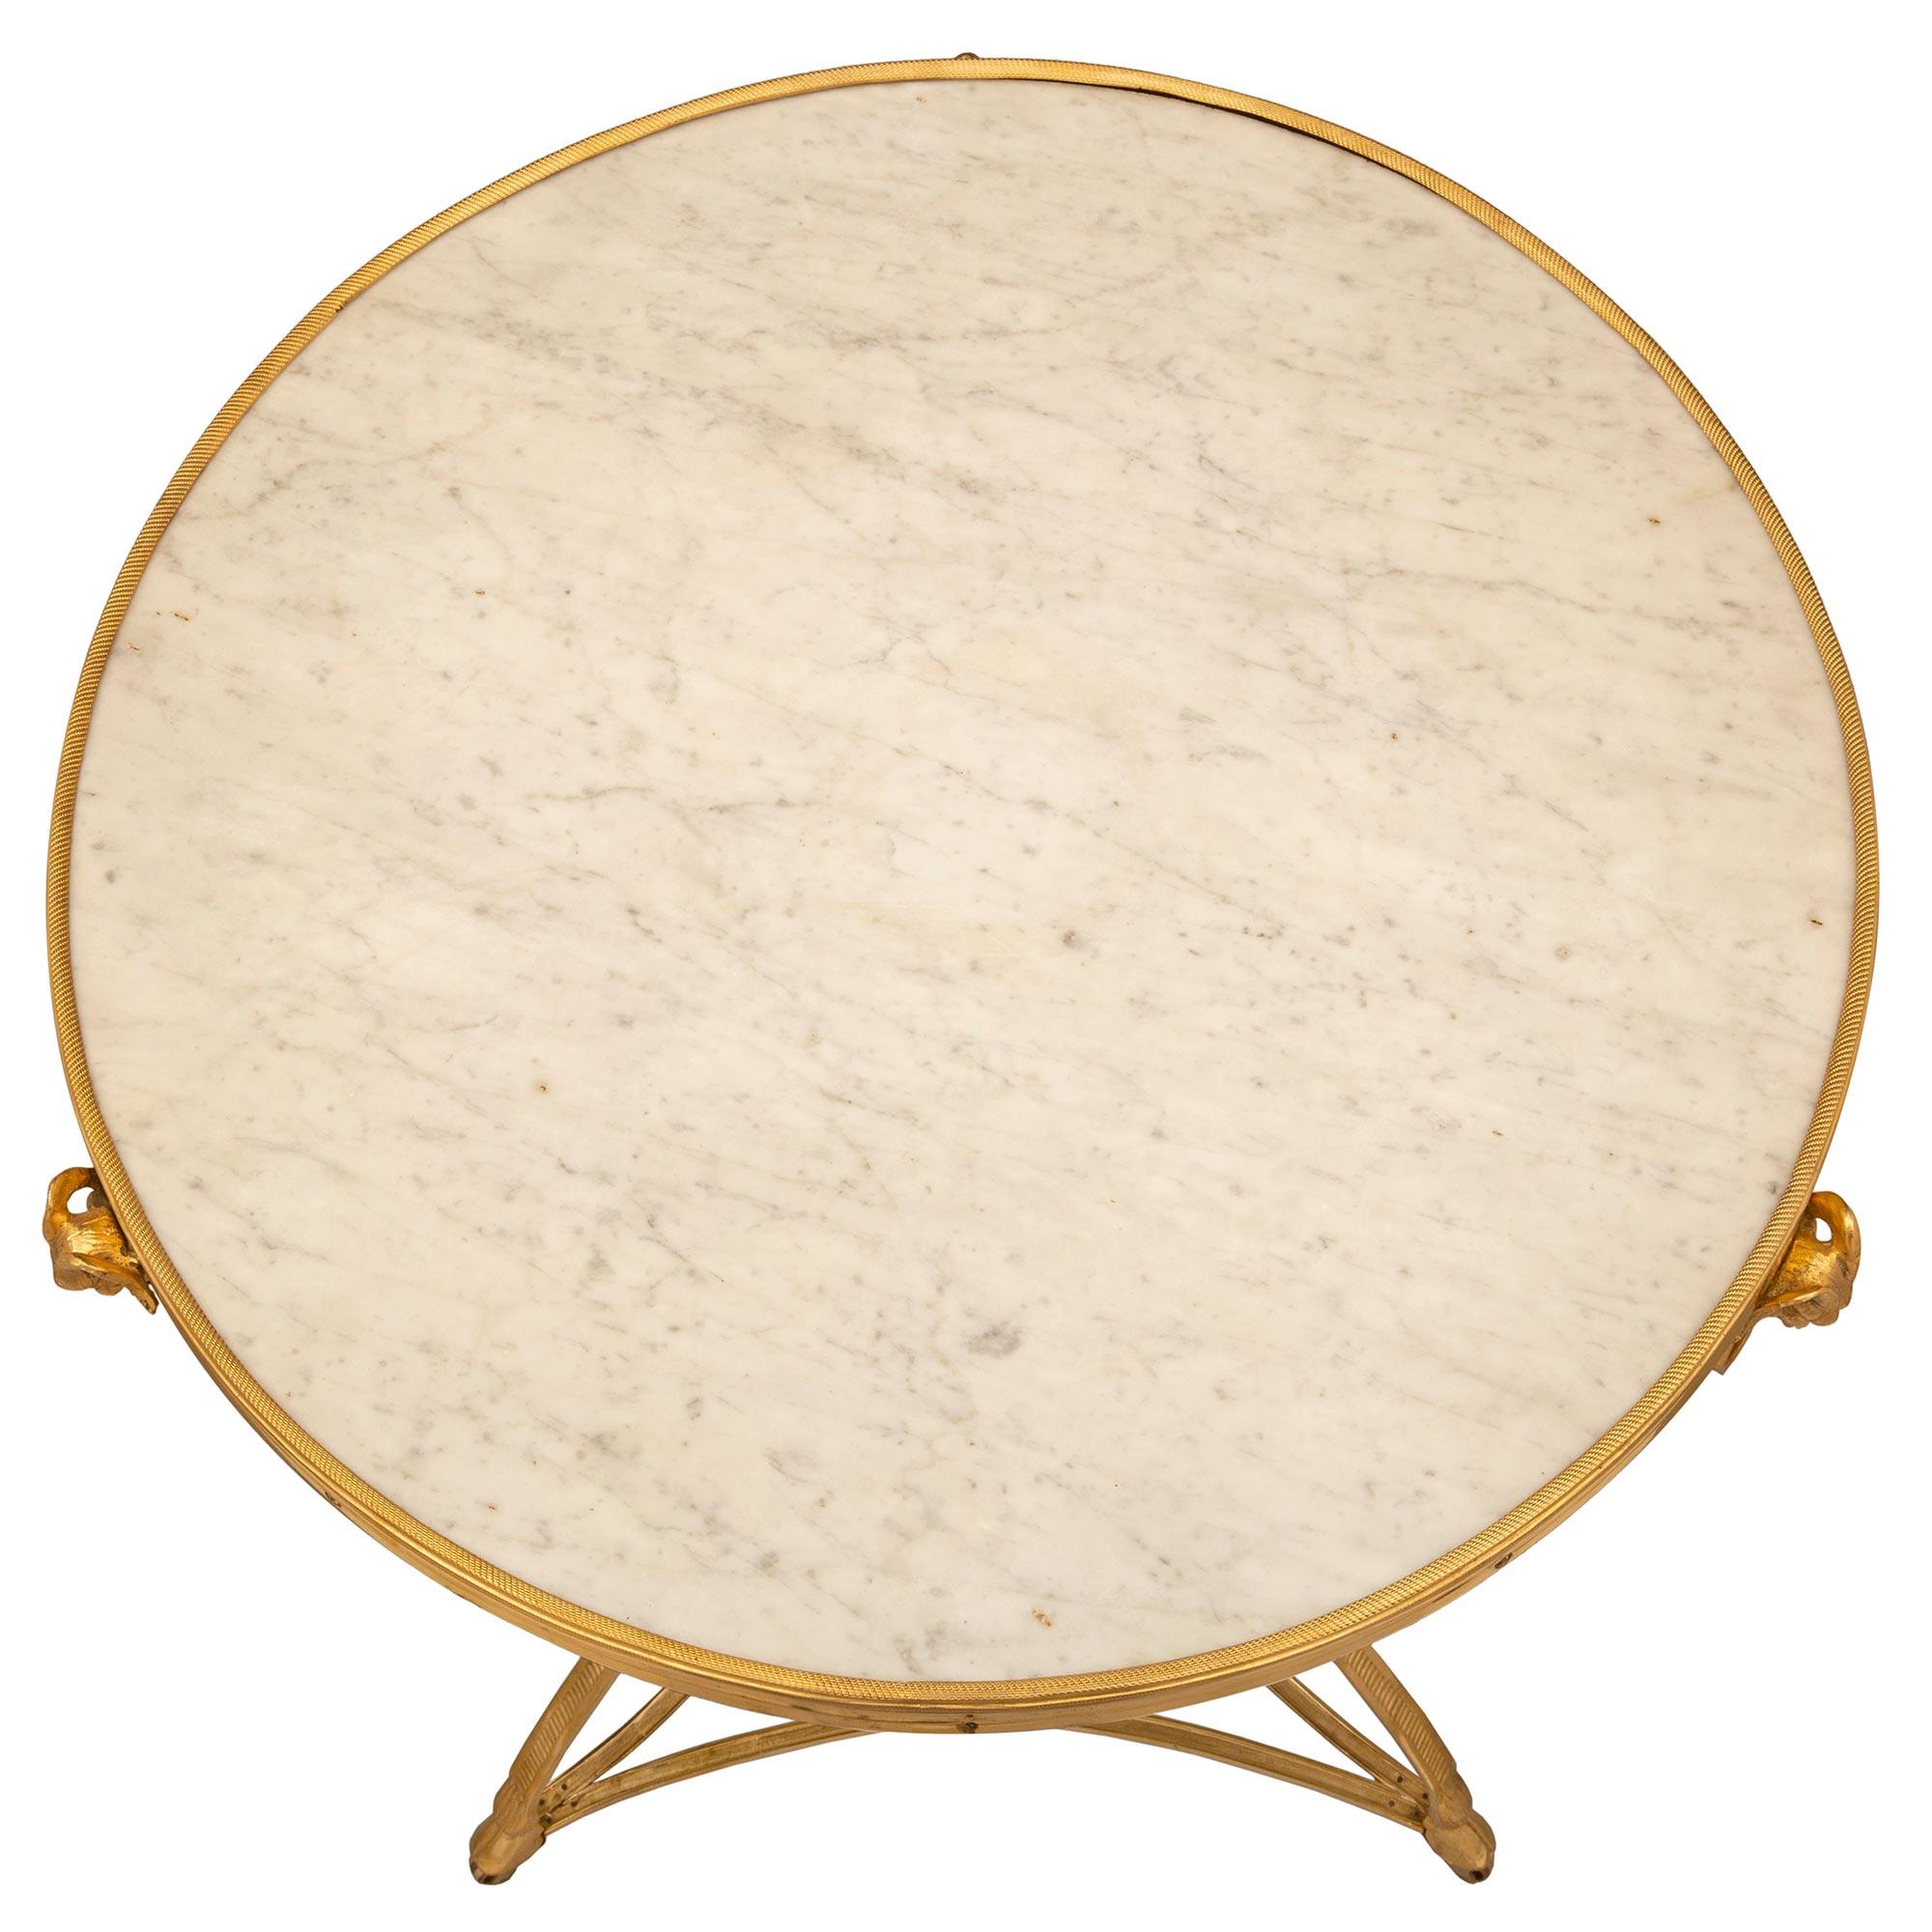 Magnifique table d'appoint de style Louis XVI du XIXe siècle en bronze doré et marbre blanc de Carrare. La table circulaire à deux niveaux est montée sur ses roulettes d'origine, sous d'élégants pieds en sabot reliés par un châssis percé très